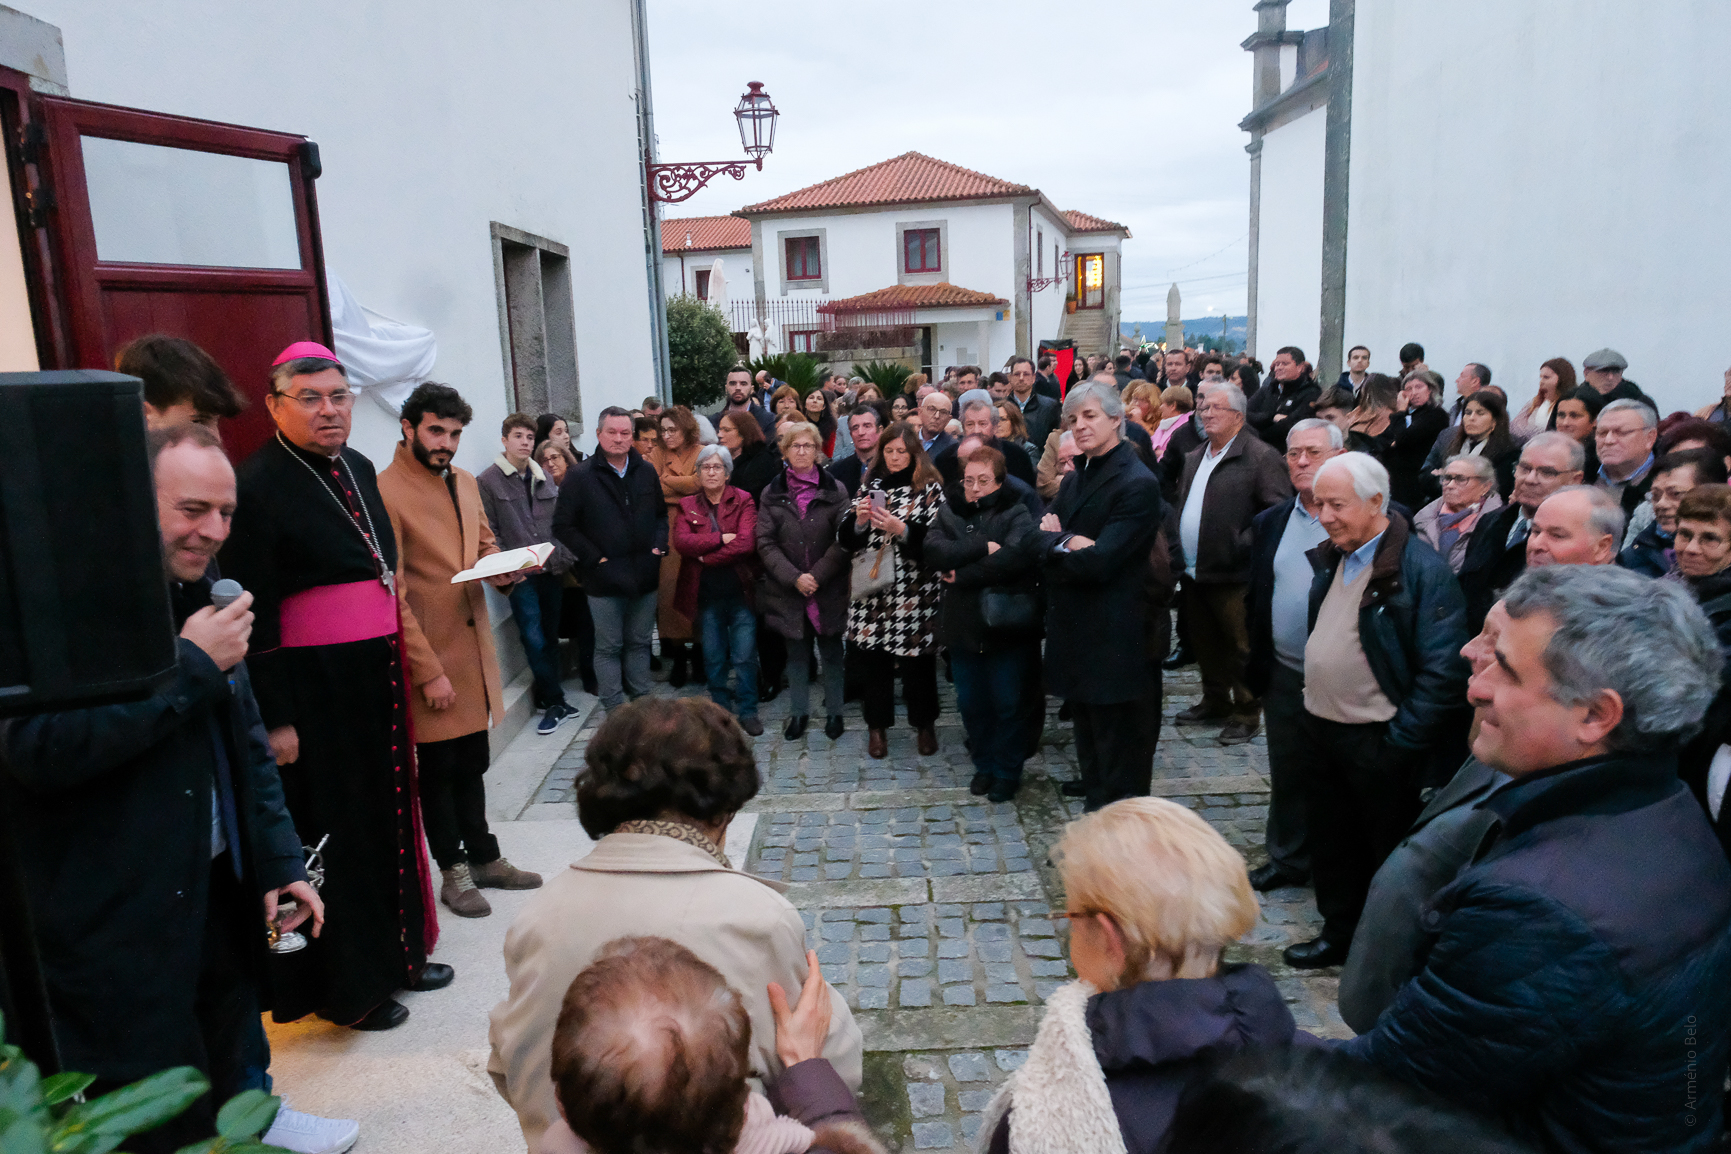 Requalificação do Salão Paroquial de Vila de Punhe benzida pelo Bispo D. João Lavrador